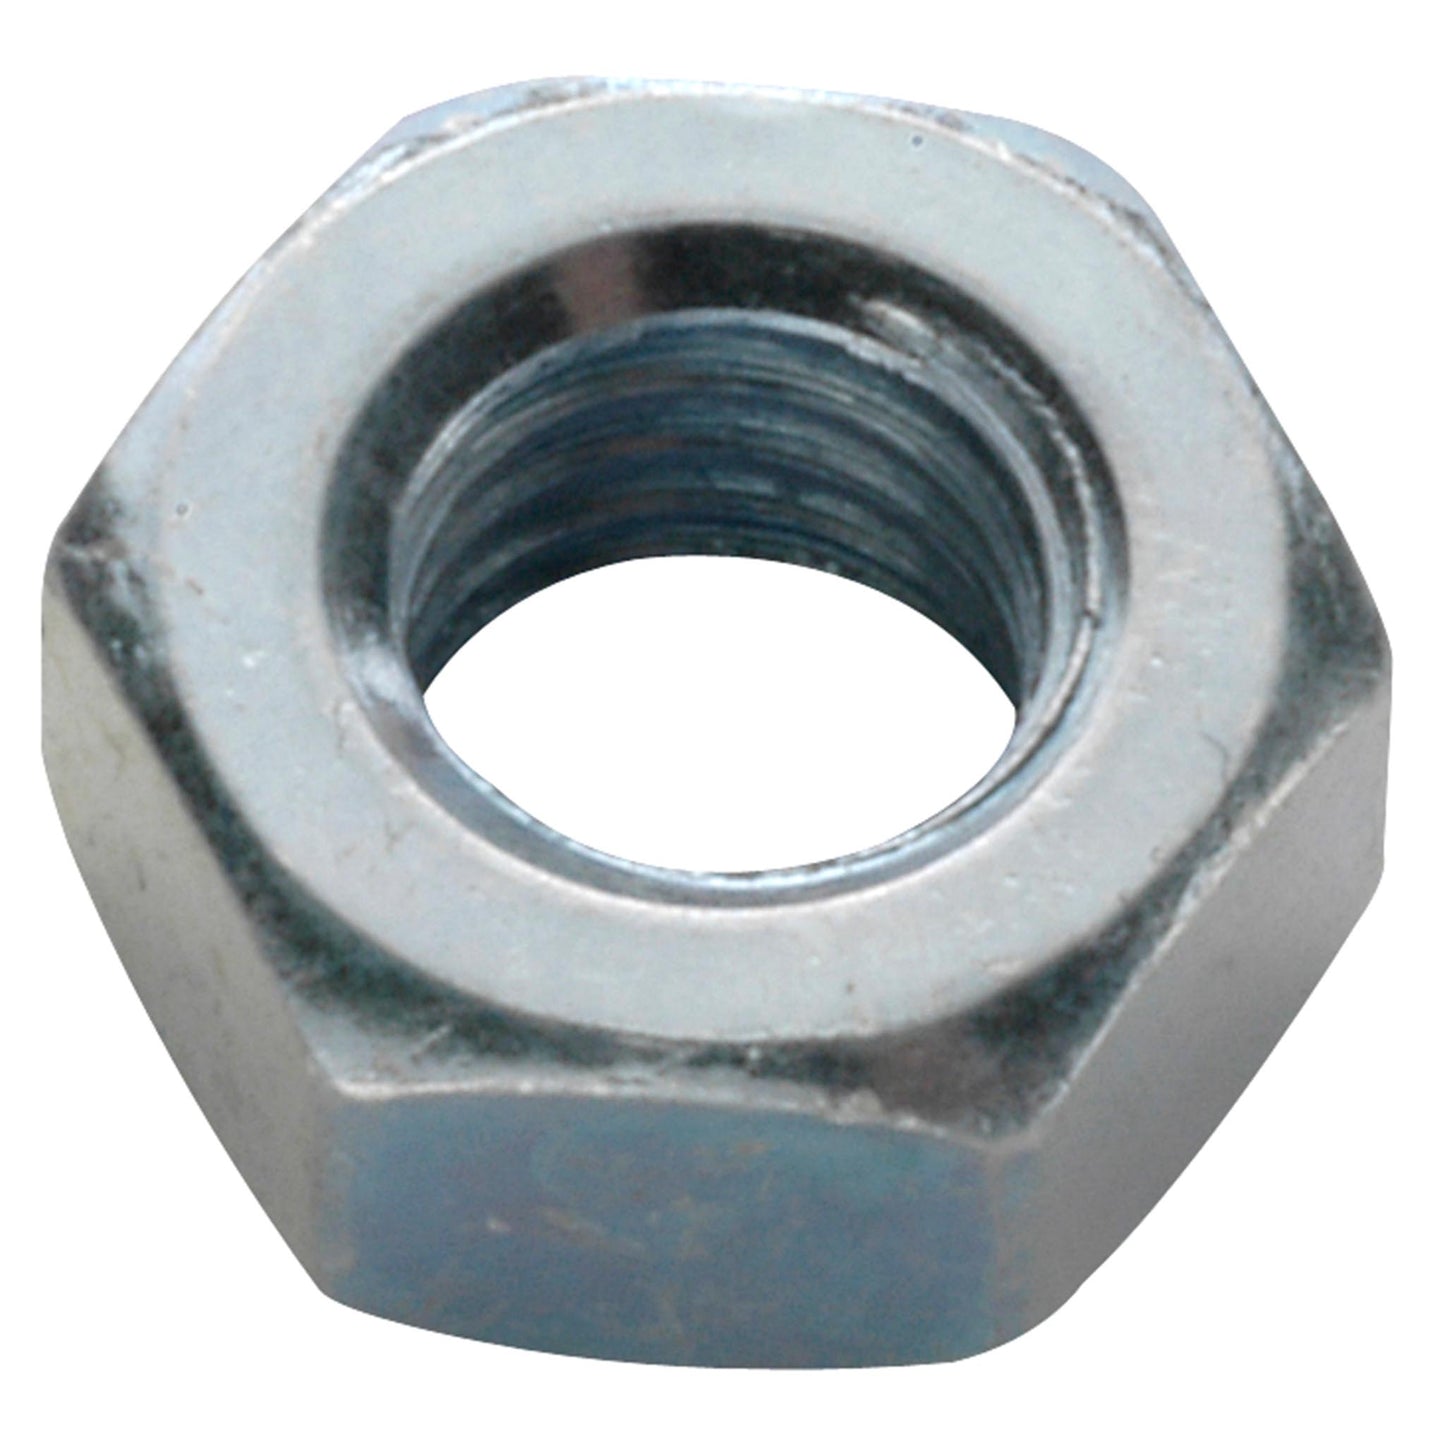 Chain tensioner - Nut galvanized steel